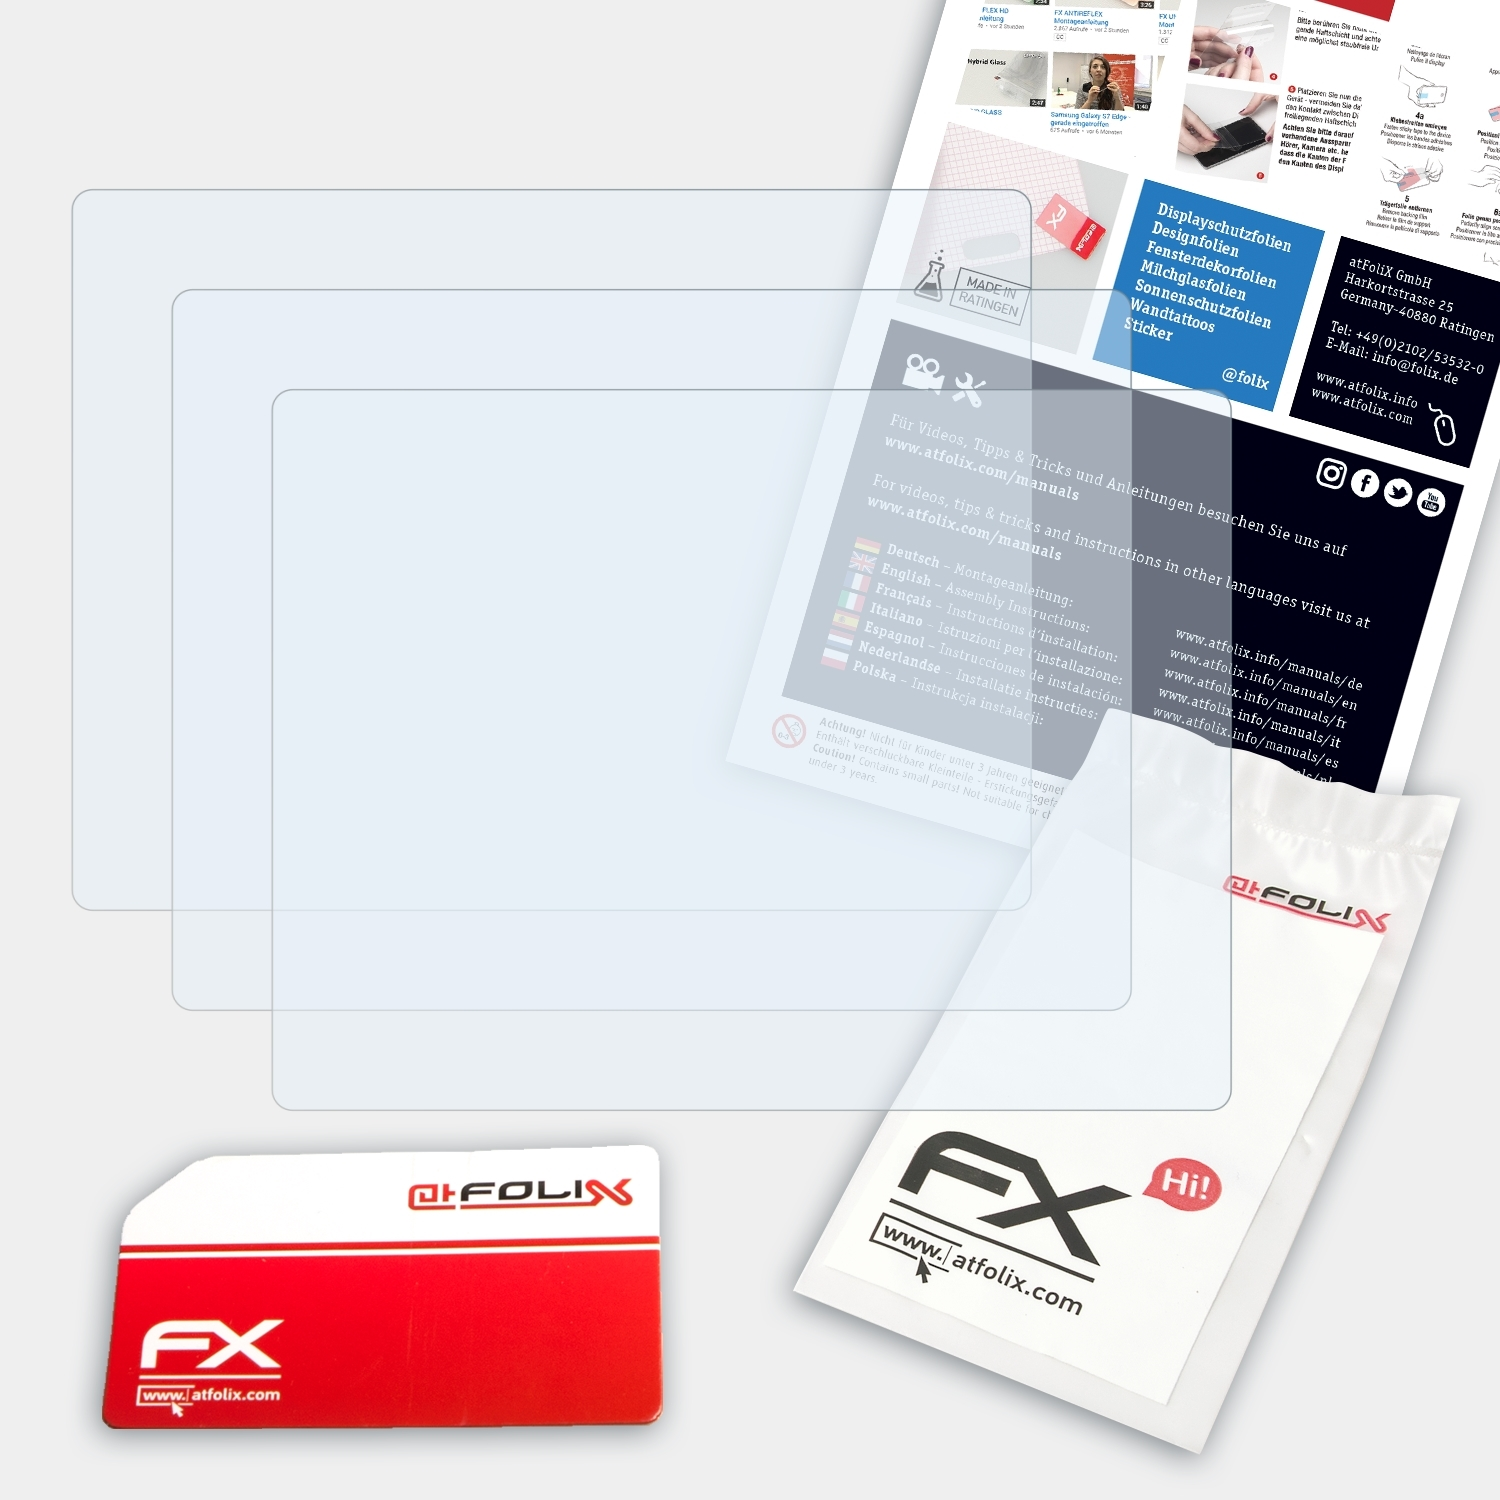 ATFOLIX 3x FX-Clear Displayschutz(für HS20EXR) Fujifilm FinePix